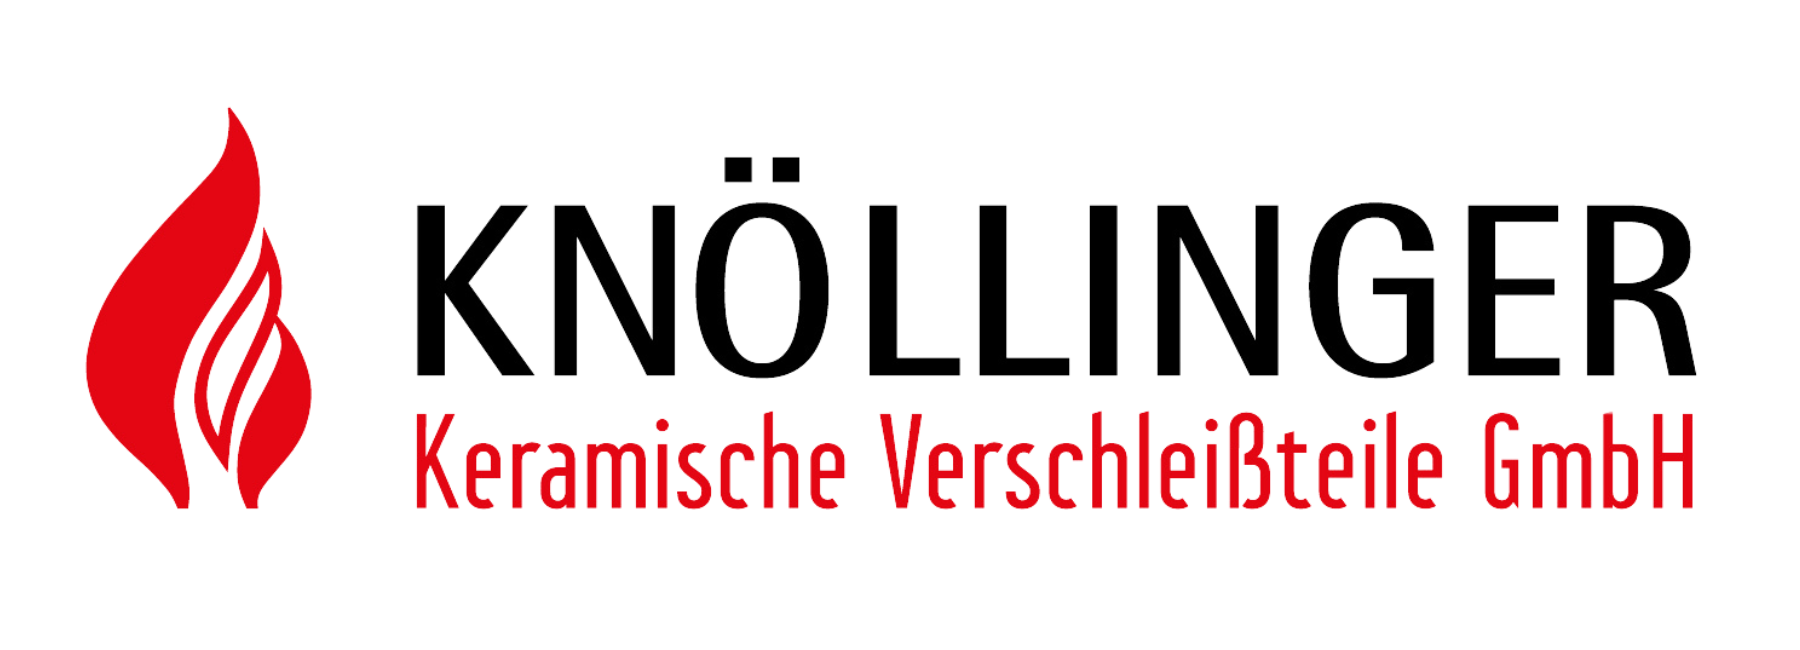 Knöllinger - Keramische Verschleißteile GmbH Logo.